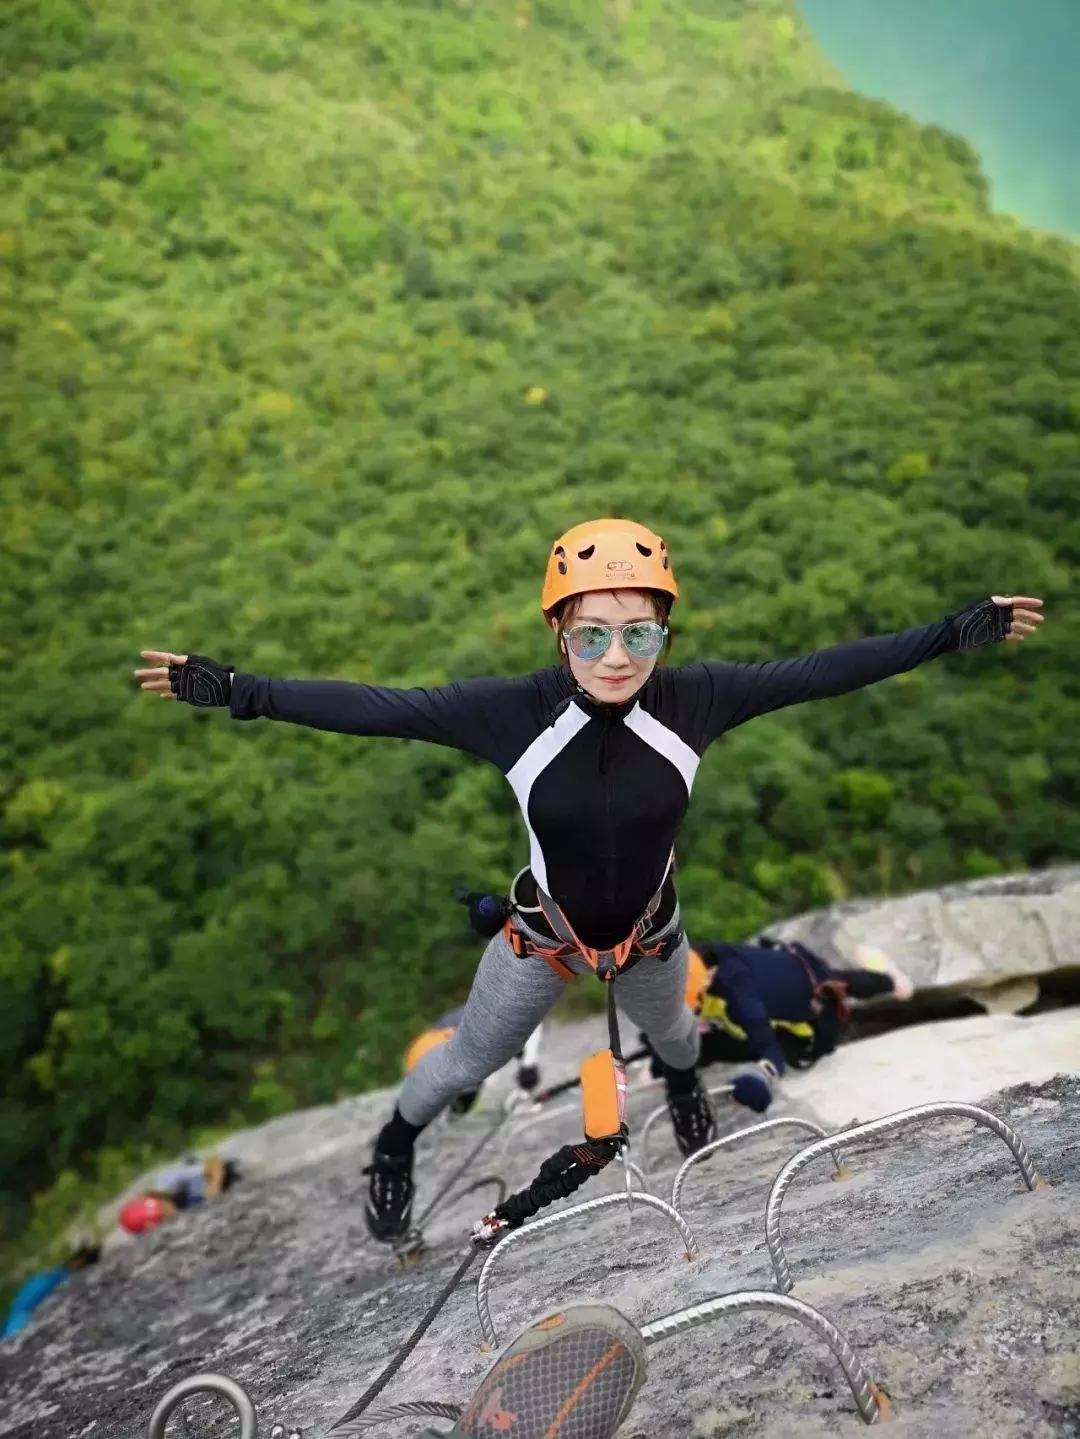 攀岩攀岩攀登极限运动勇敢运动图片素材免费下载 - 觅知网